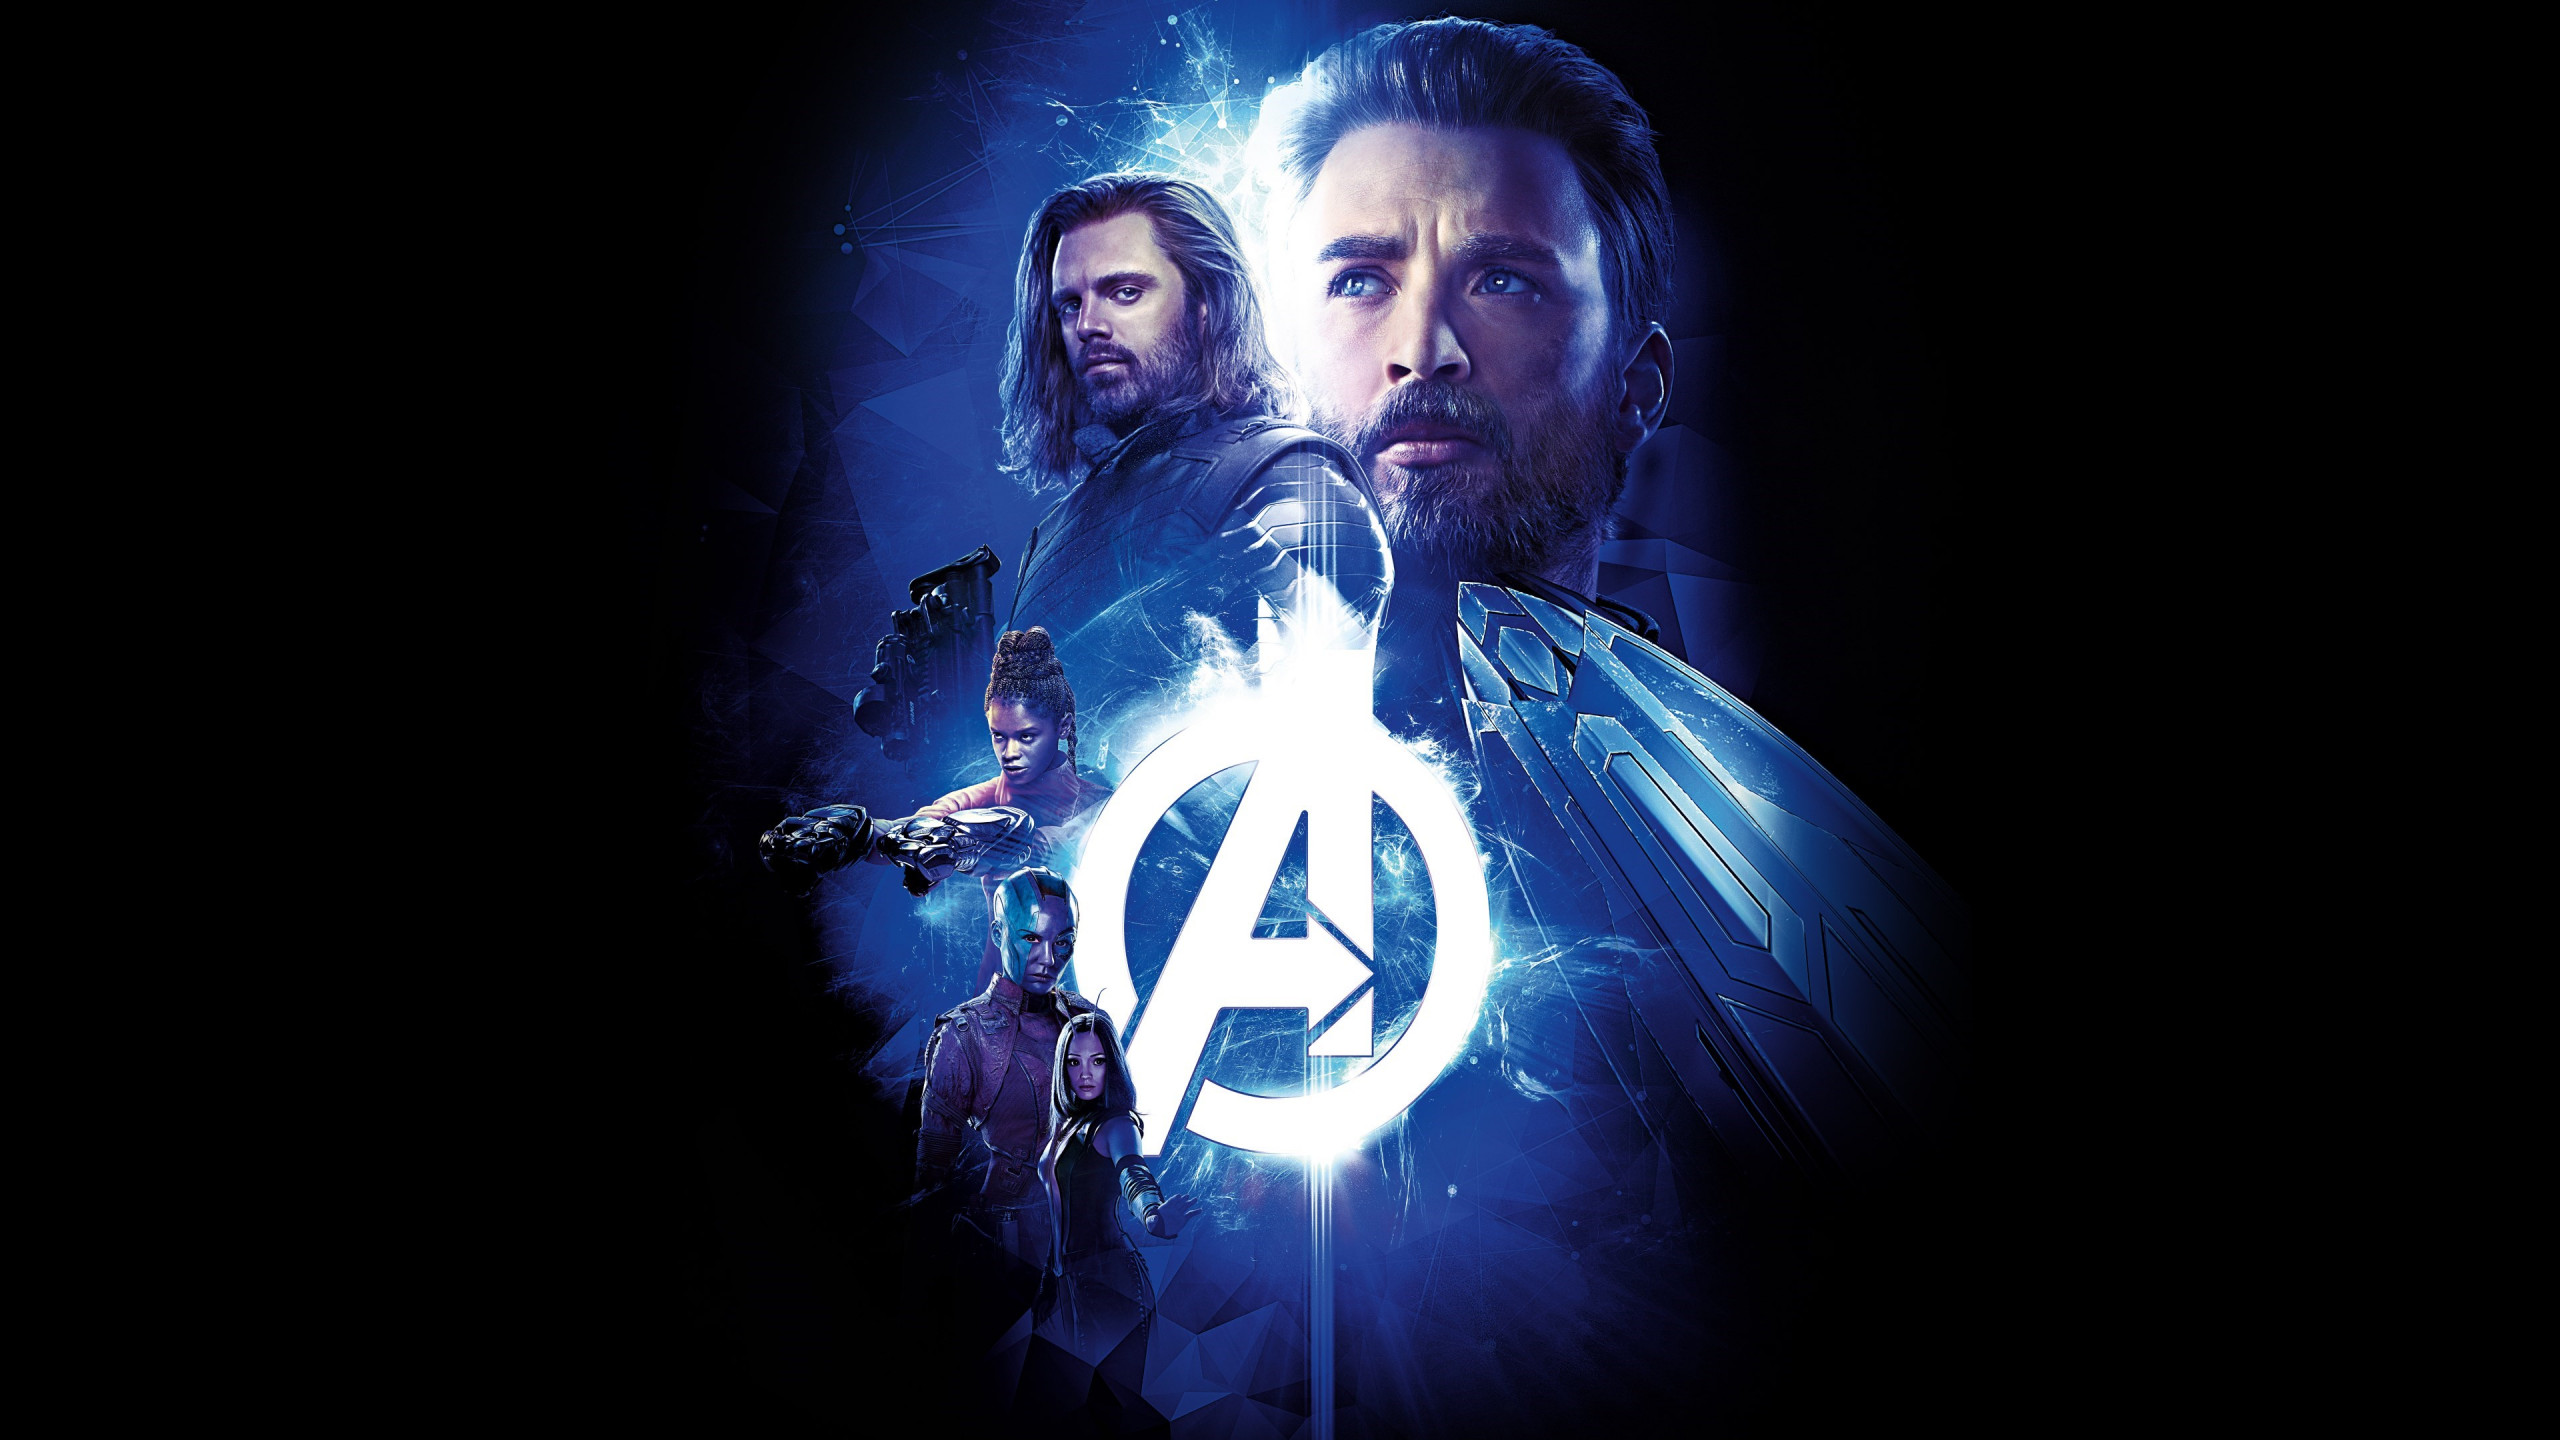 Avengers: Infinity War wallpaper 2560x1440